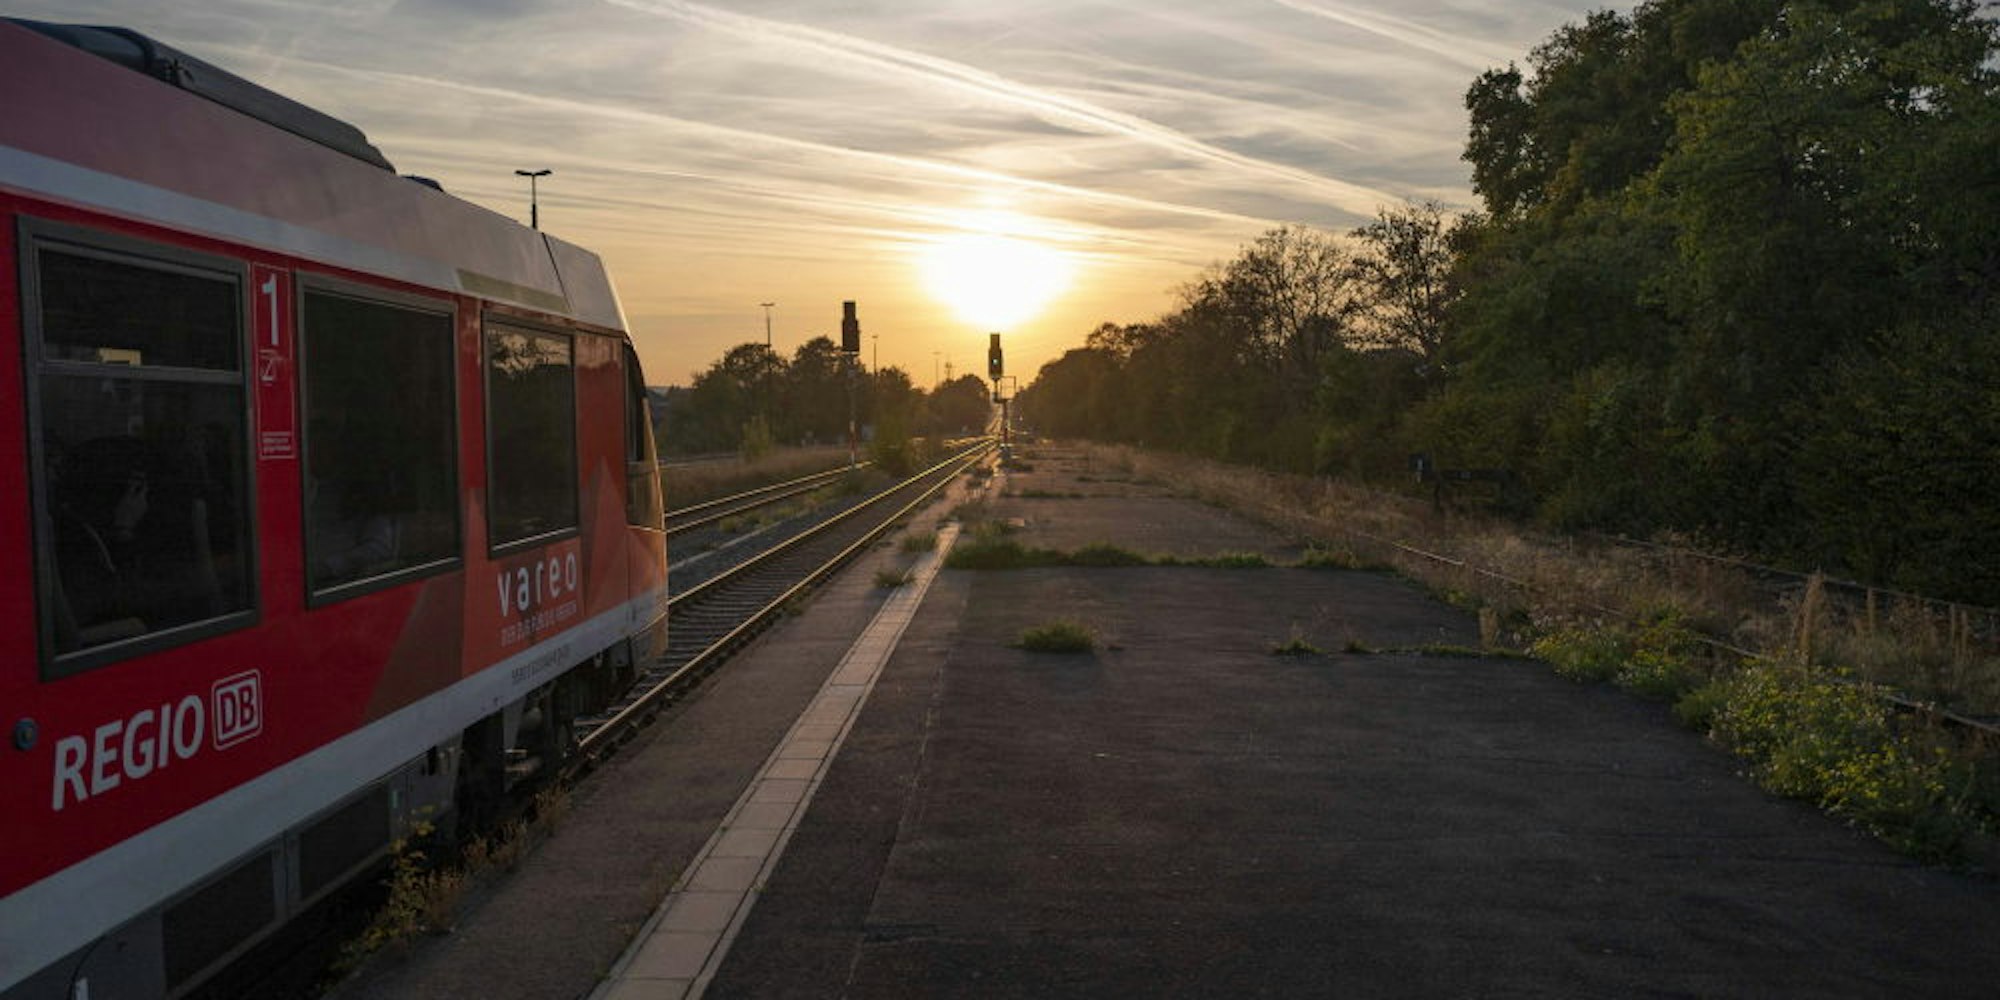 Der Sonne entgegen: Brechen für die Bahnpendler bald bessere Zeiten an? Die geplante Elektrifizierung gilt als ein Schlüssel für ein attraktiveres Angebot auf der Eifelstrecke.